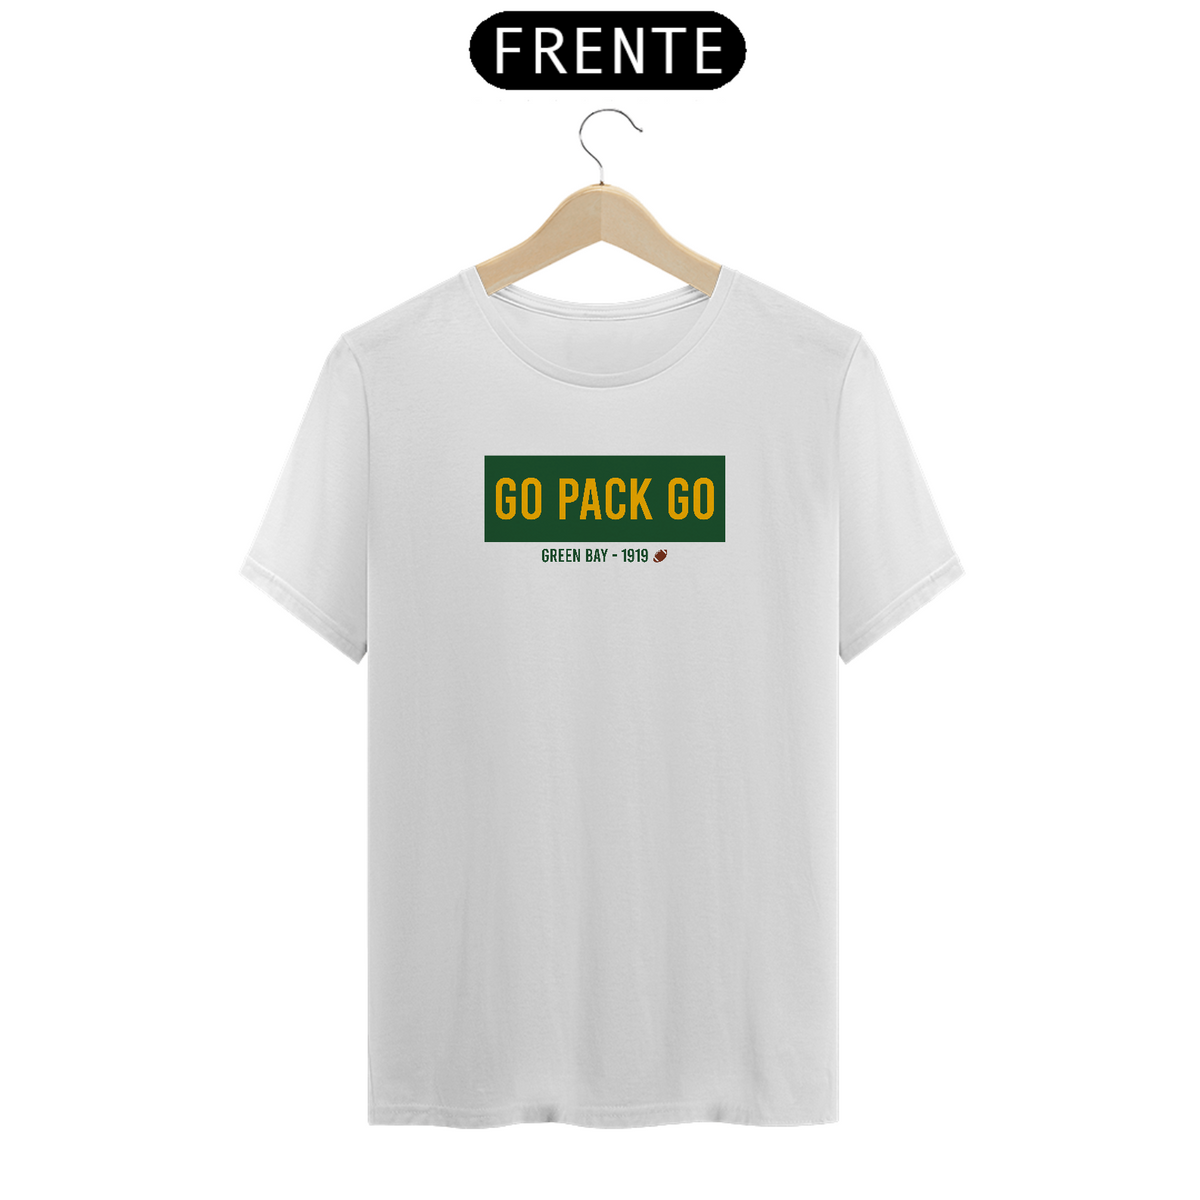 Nome do produto: Camiseta Prime Go Pack Go